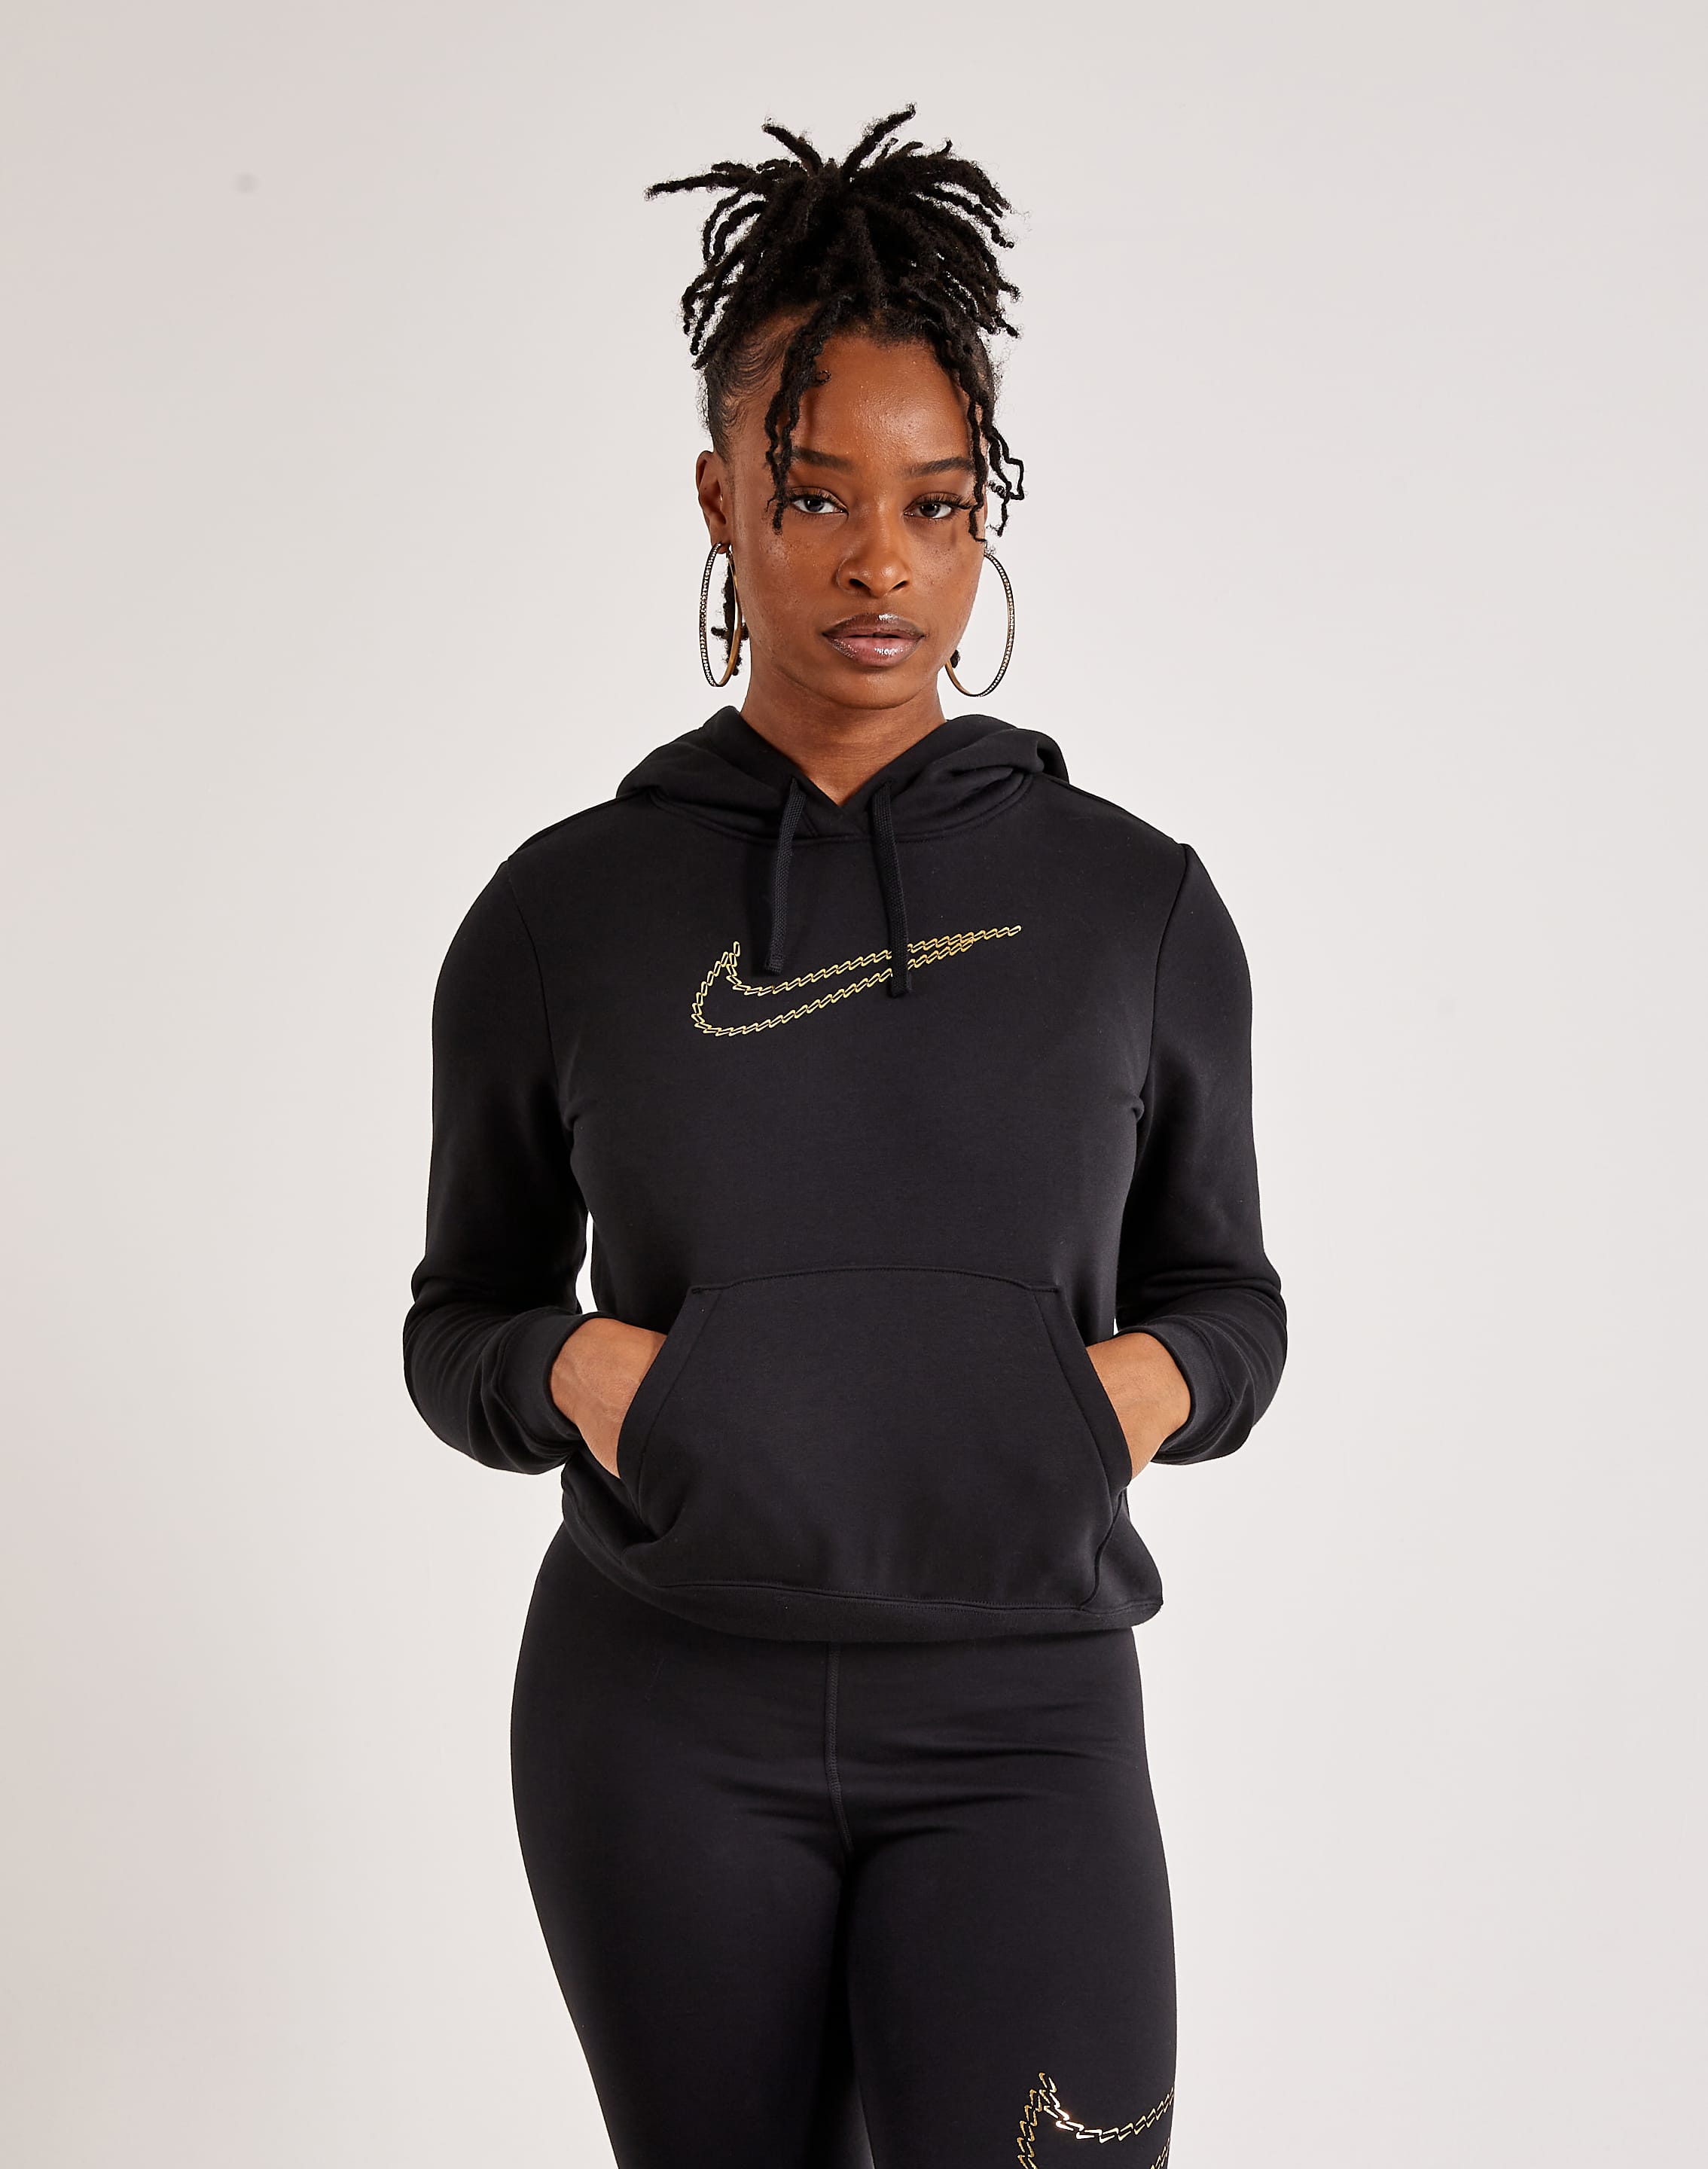 Nike Womens Sportswear Club Fleece Pullover Hoodie